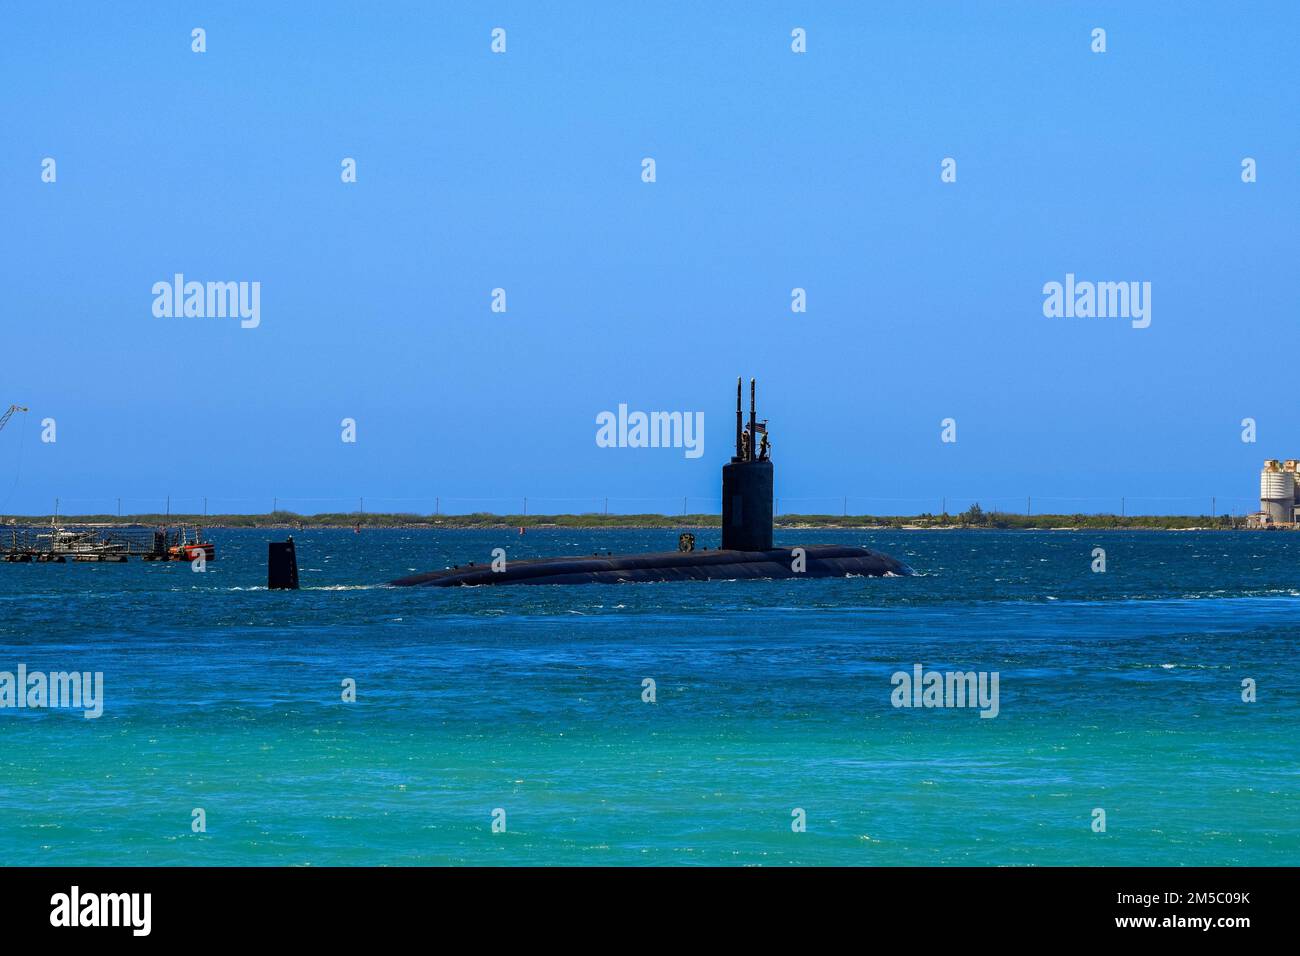 APA HARBOR, Guam (21 febbraio 2022) il sottomarino ad attacco rapido USS Asheville (SSN 758) di Los Angeles, assegnato al comandante, Submarine Squadron (CSS) 15, parte dalla base navale Guam per un'implementazione di routine. Asheville eseguirà una gamma completa di operazioni, tra cui la guerra anti-sottomarina e anti-superficie, durante lo schieramento Indo-Pacifico. Foto Stock